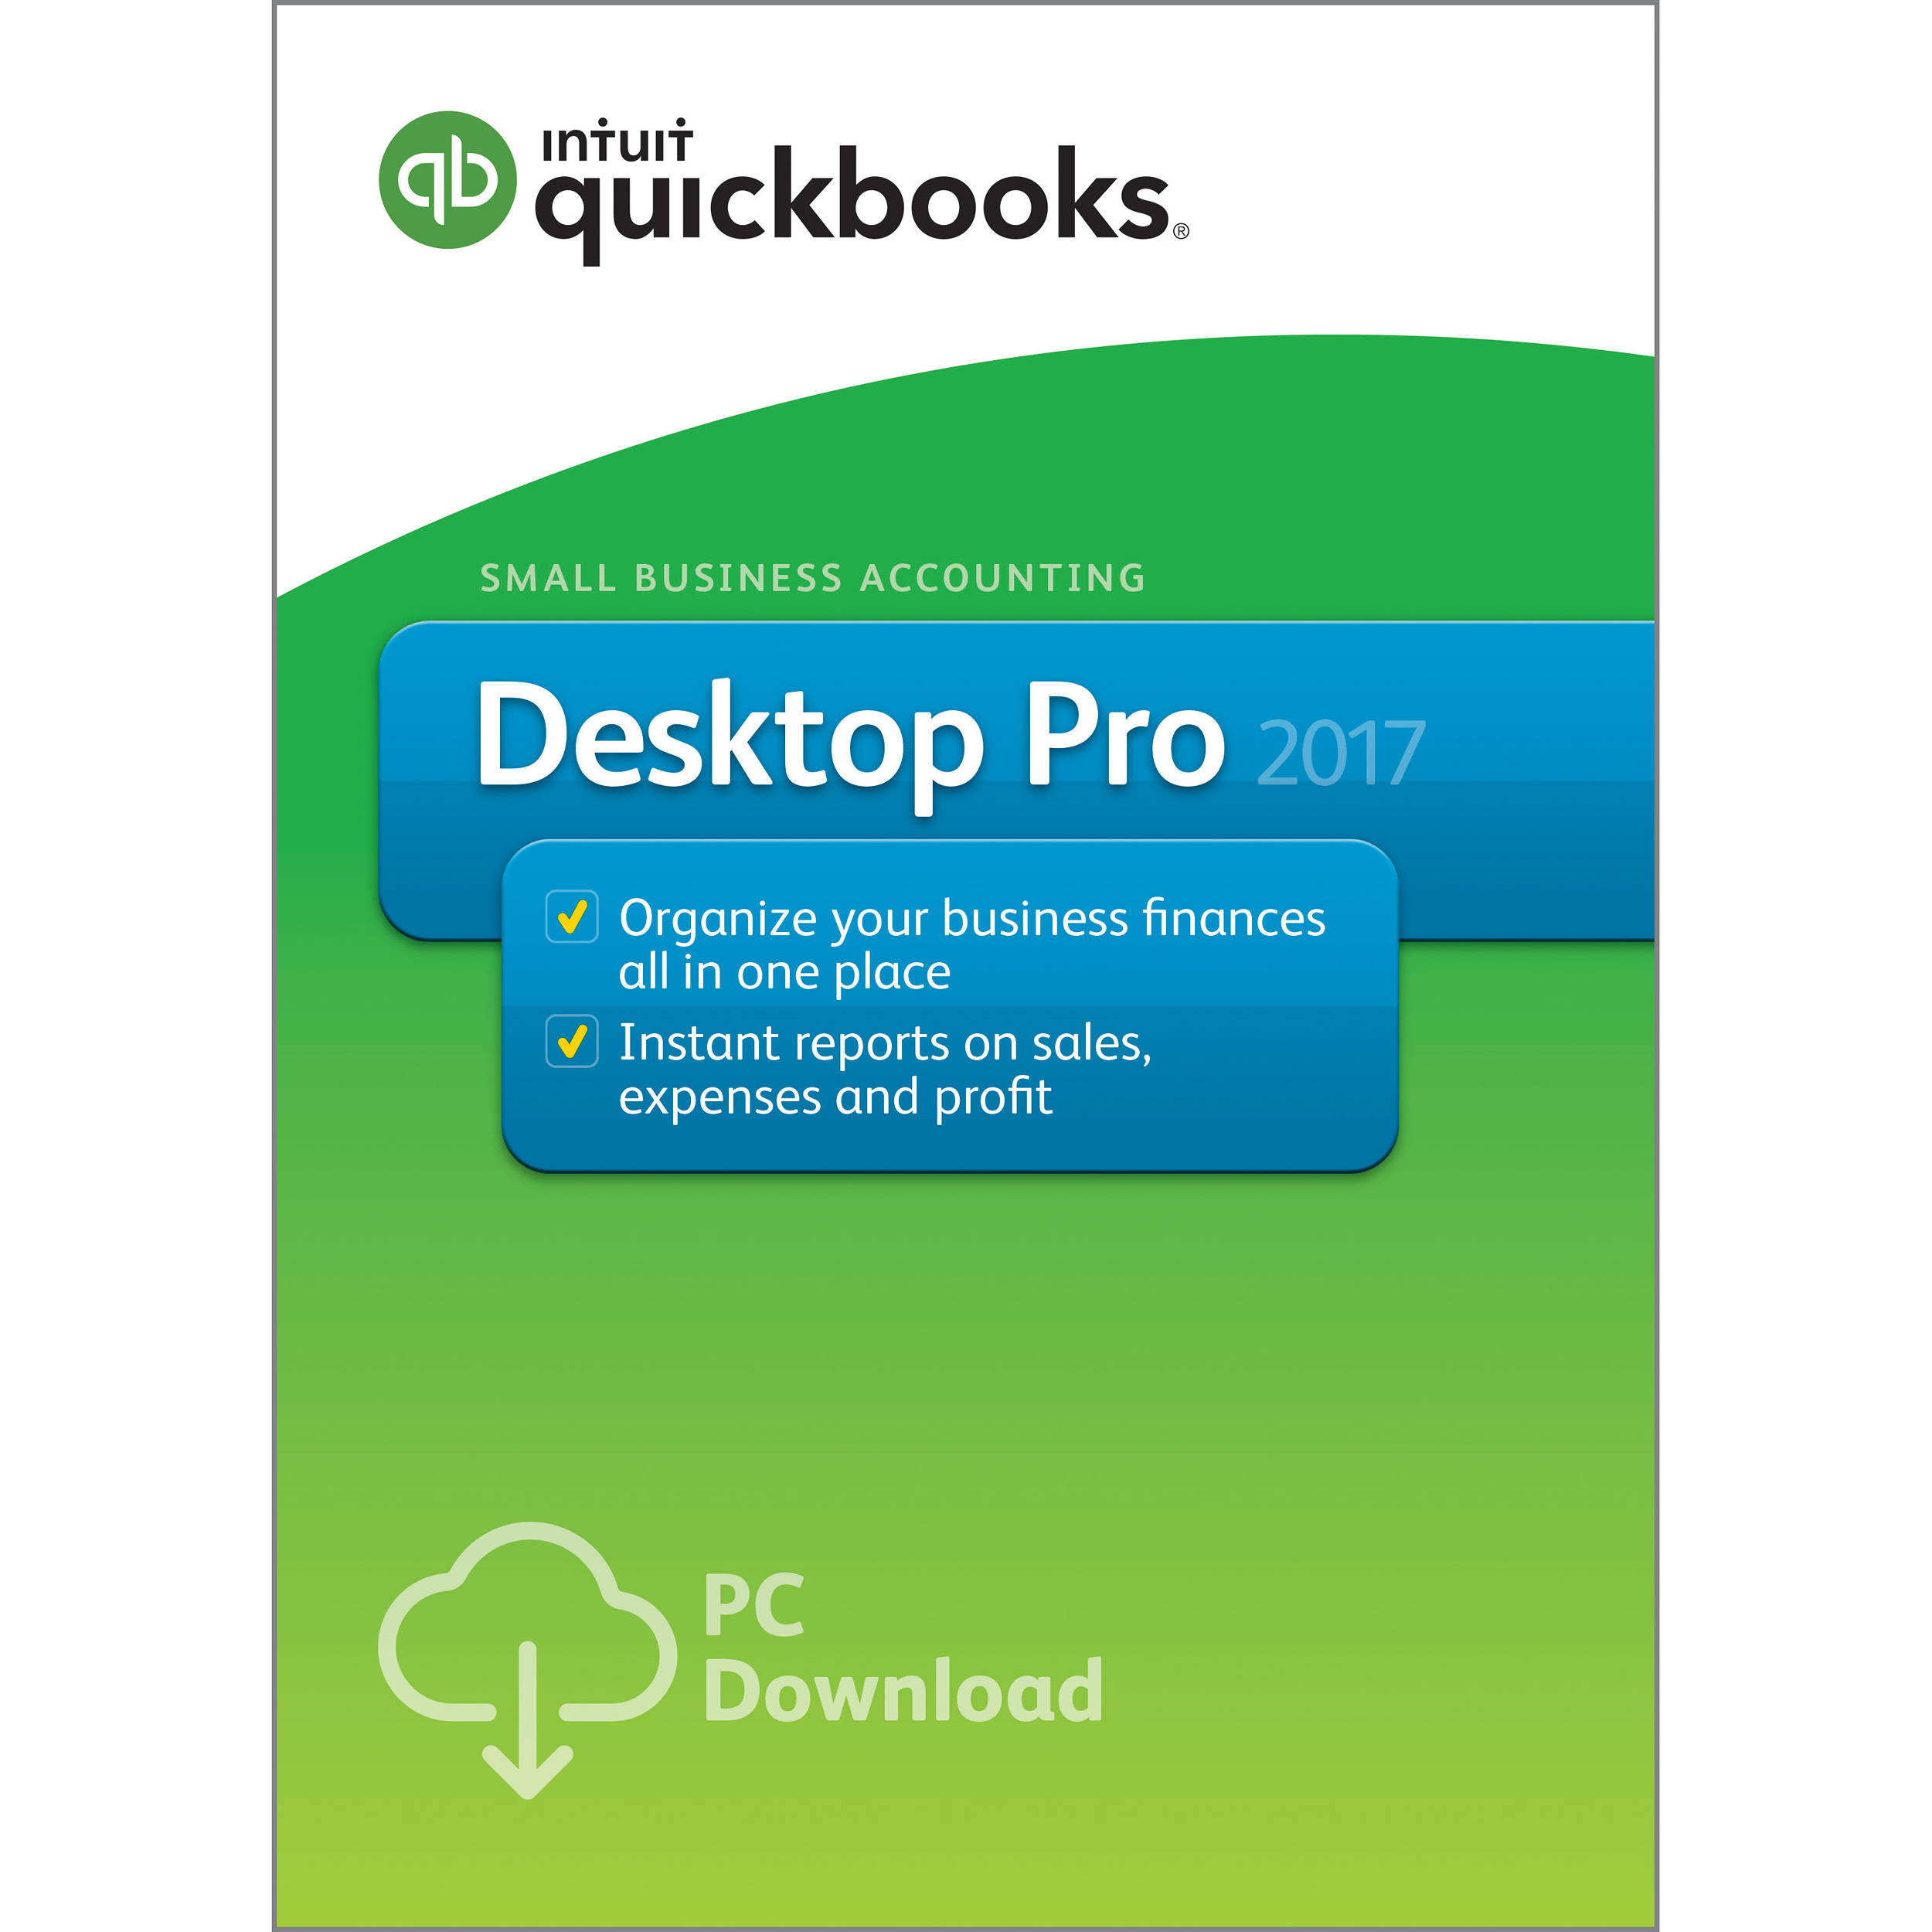 quickbook update for mac 2014